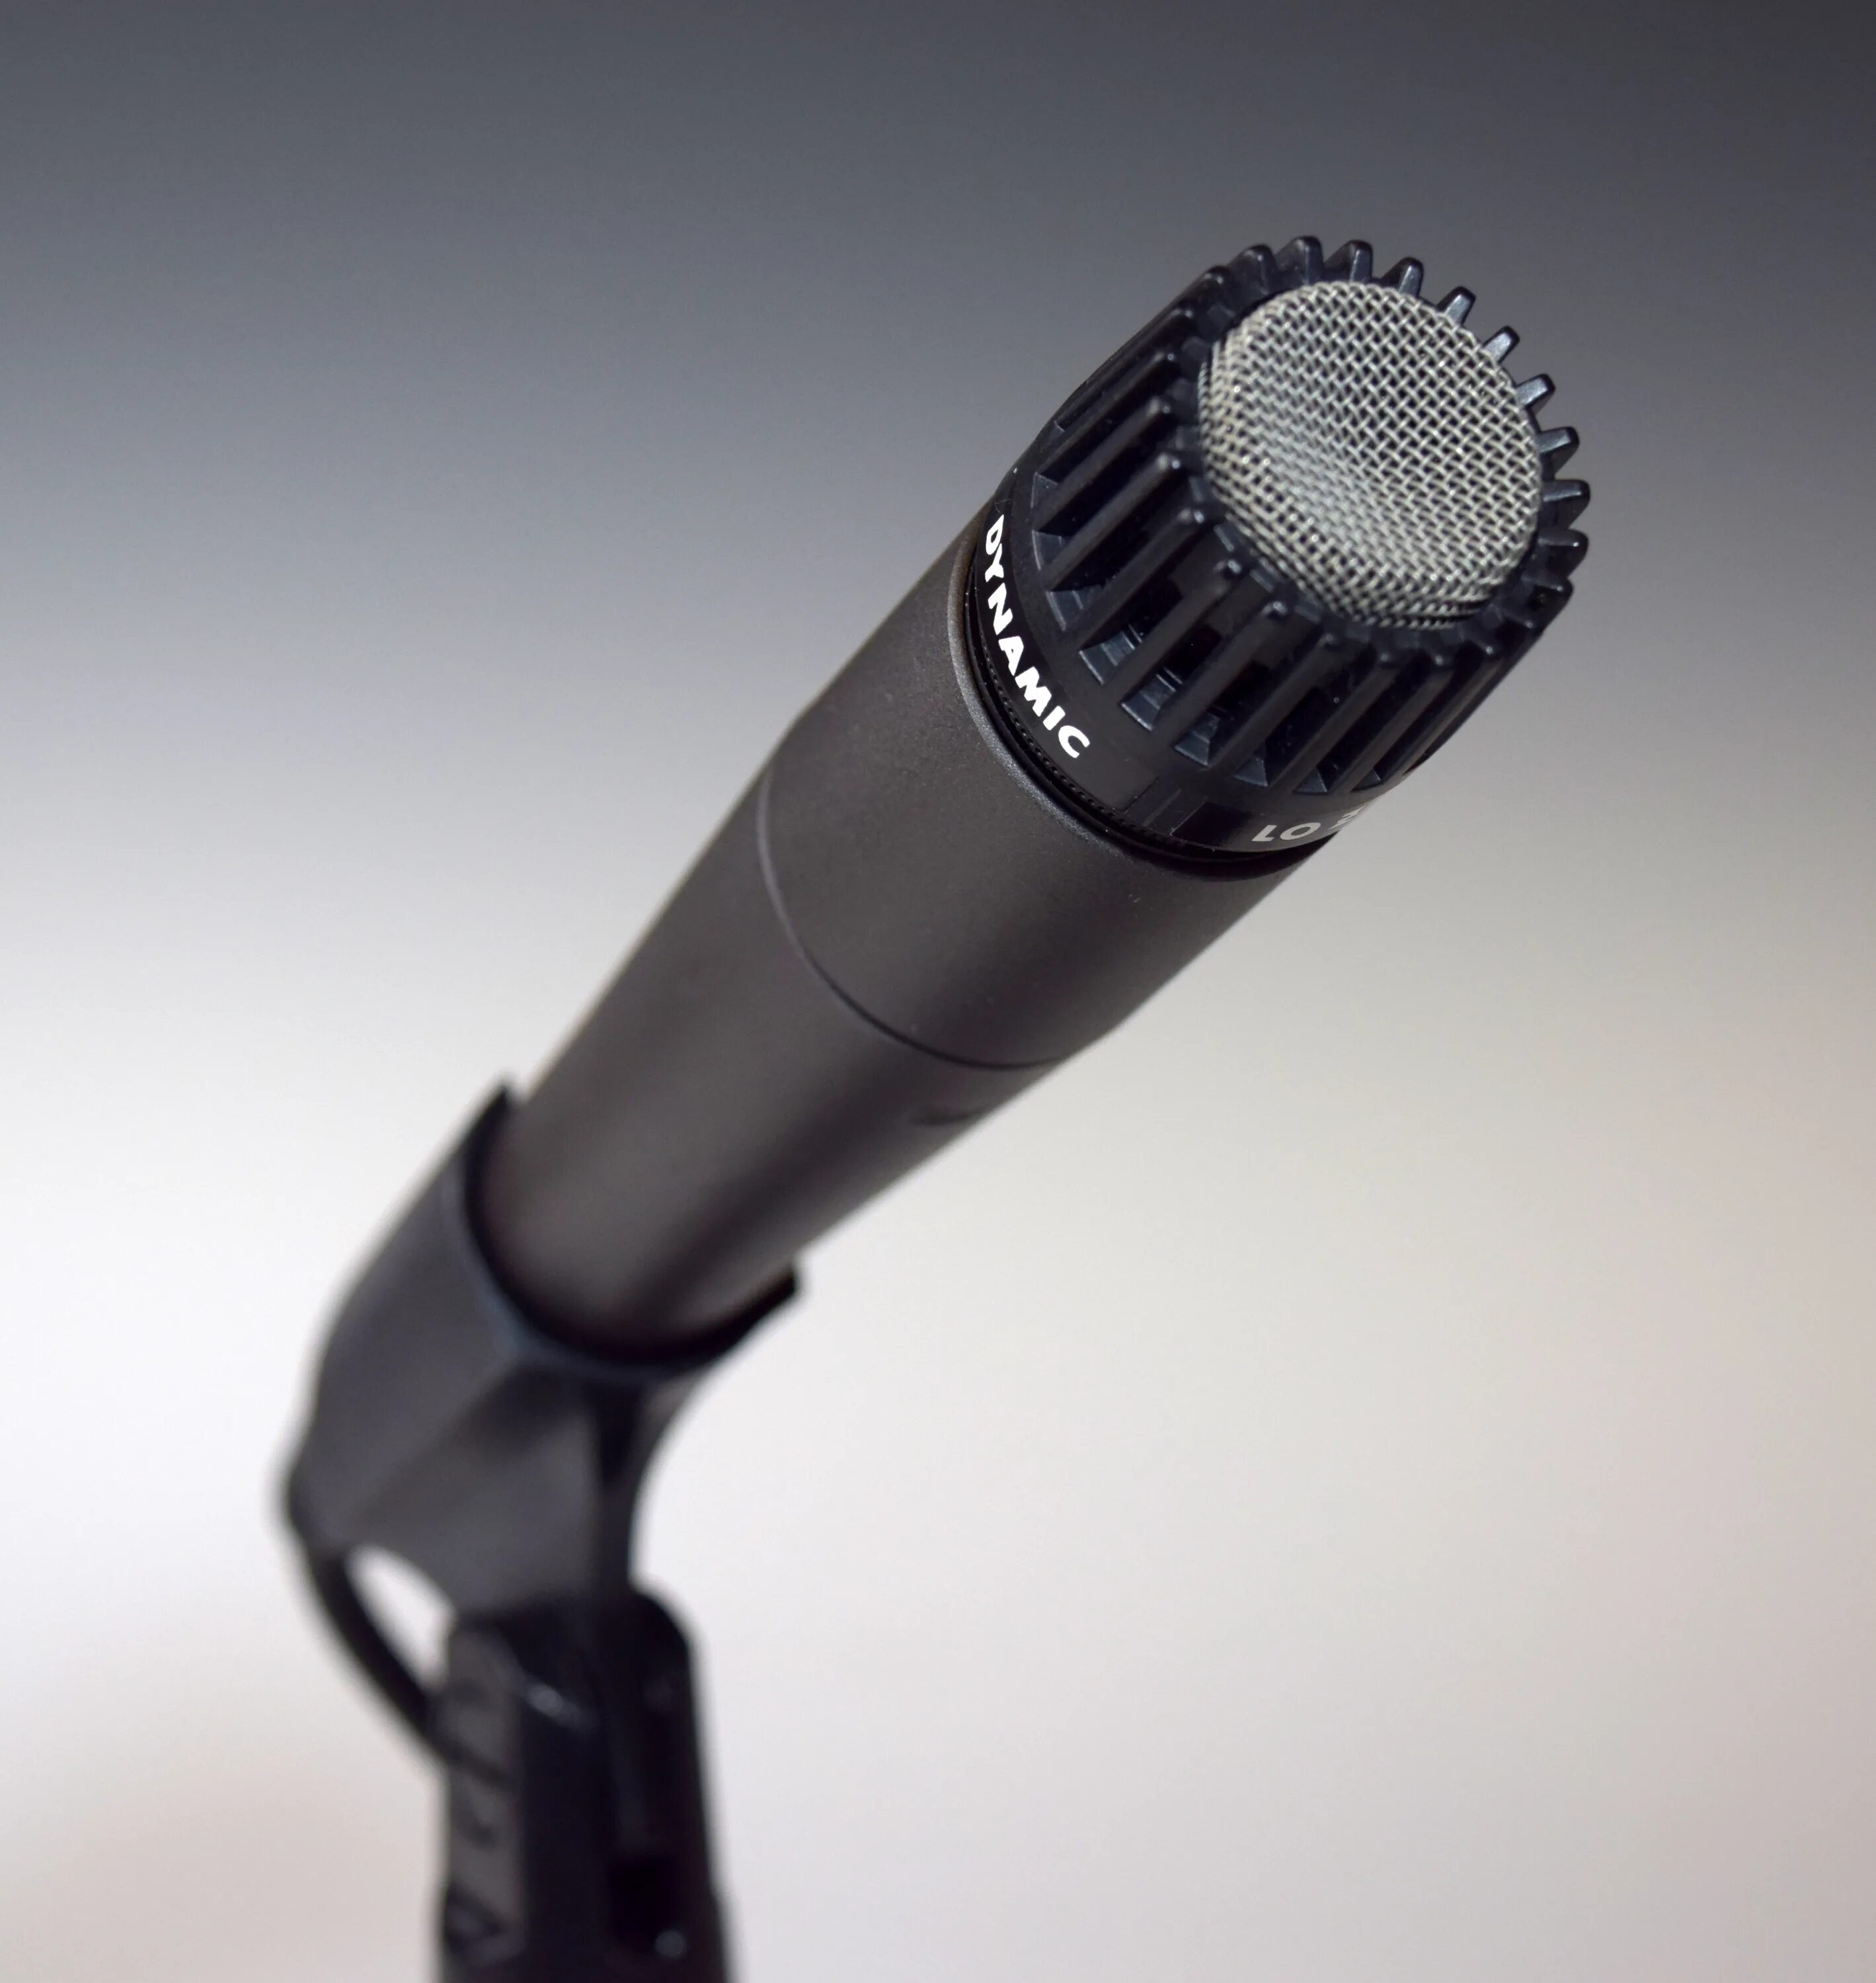 Динамический микрофон AUD-98xlr. Shur mikrafon беспроводной. Микрофон динамический беспроводной. Современные микрофоны. Как использовать микрофон в качестве микрофона